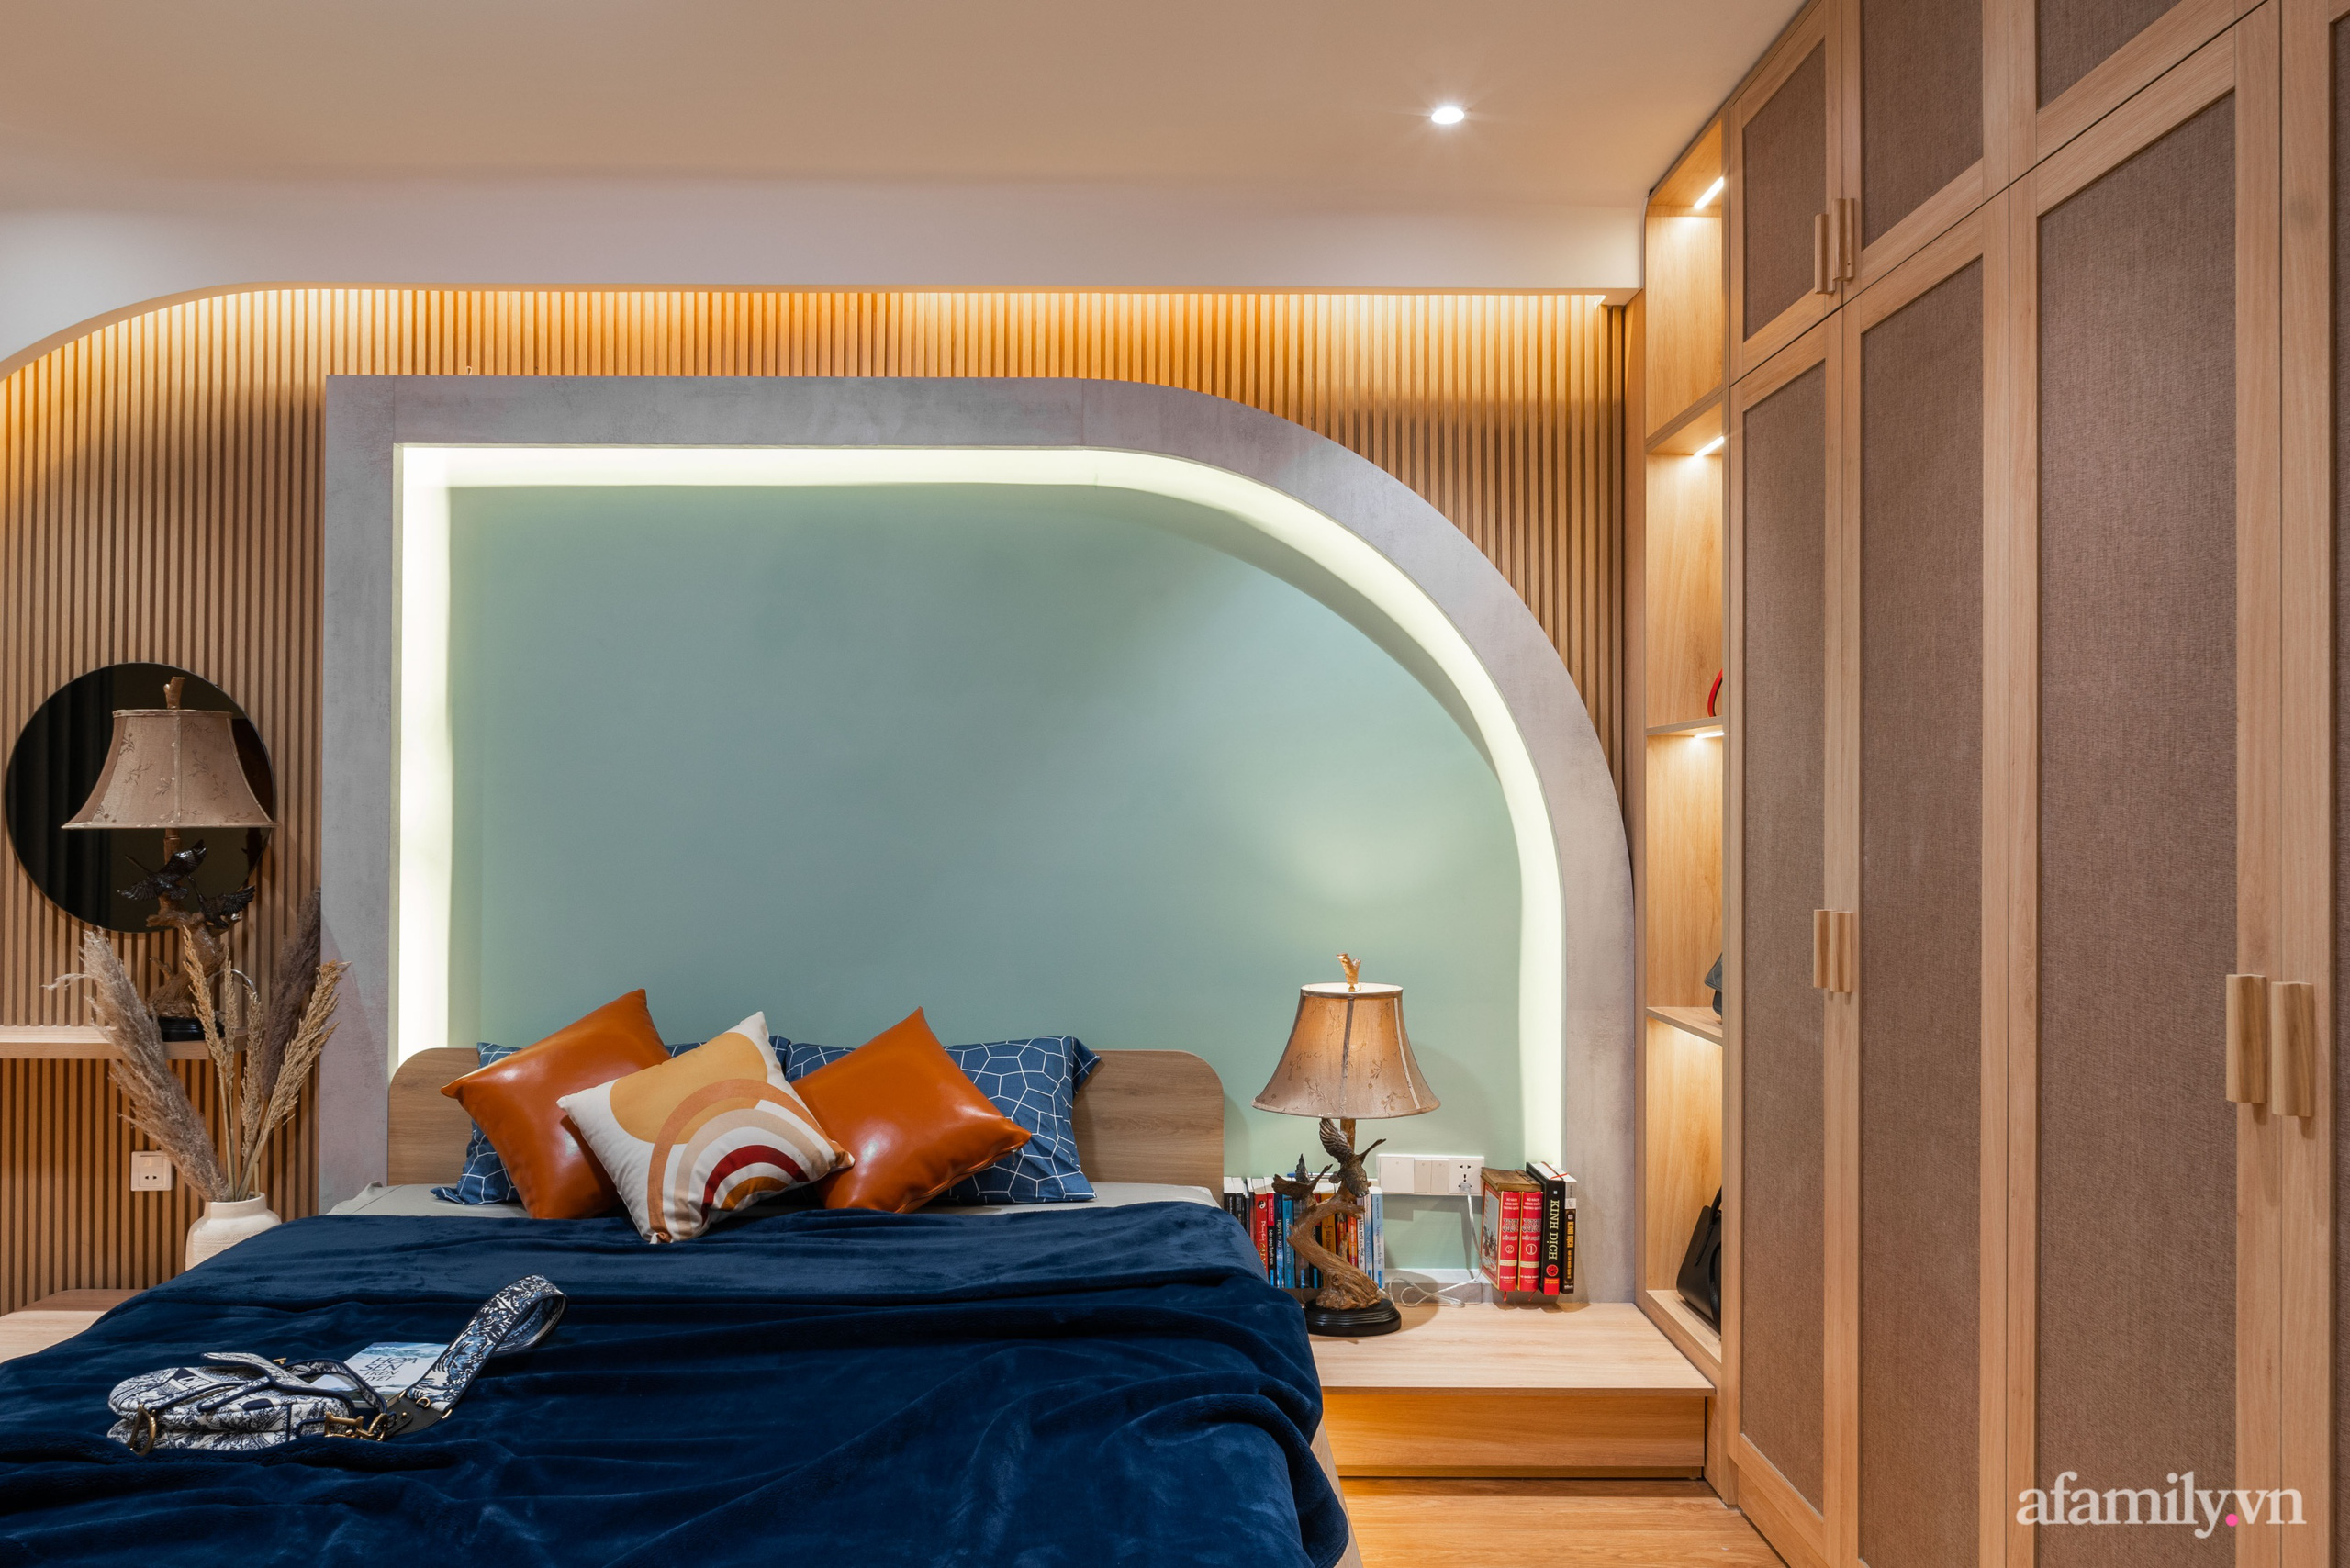 Căn hộ 180m² đẹp tinh tế và sang trọng với tông màu gỗ kết hợp sắc trắng hiện đại ở Hoàng Đạo Thúy, Hà Nội - Ảnh 16.